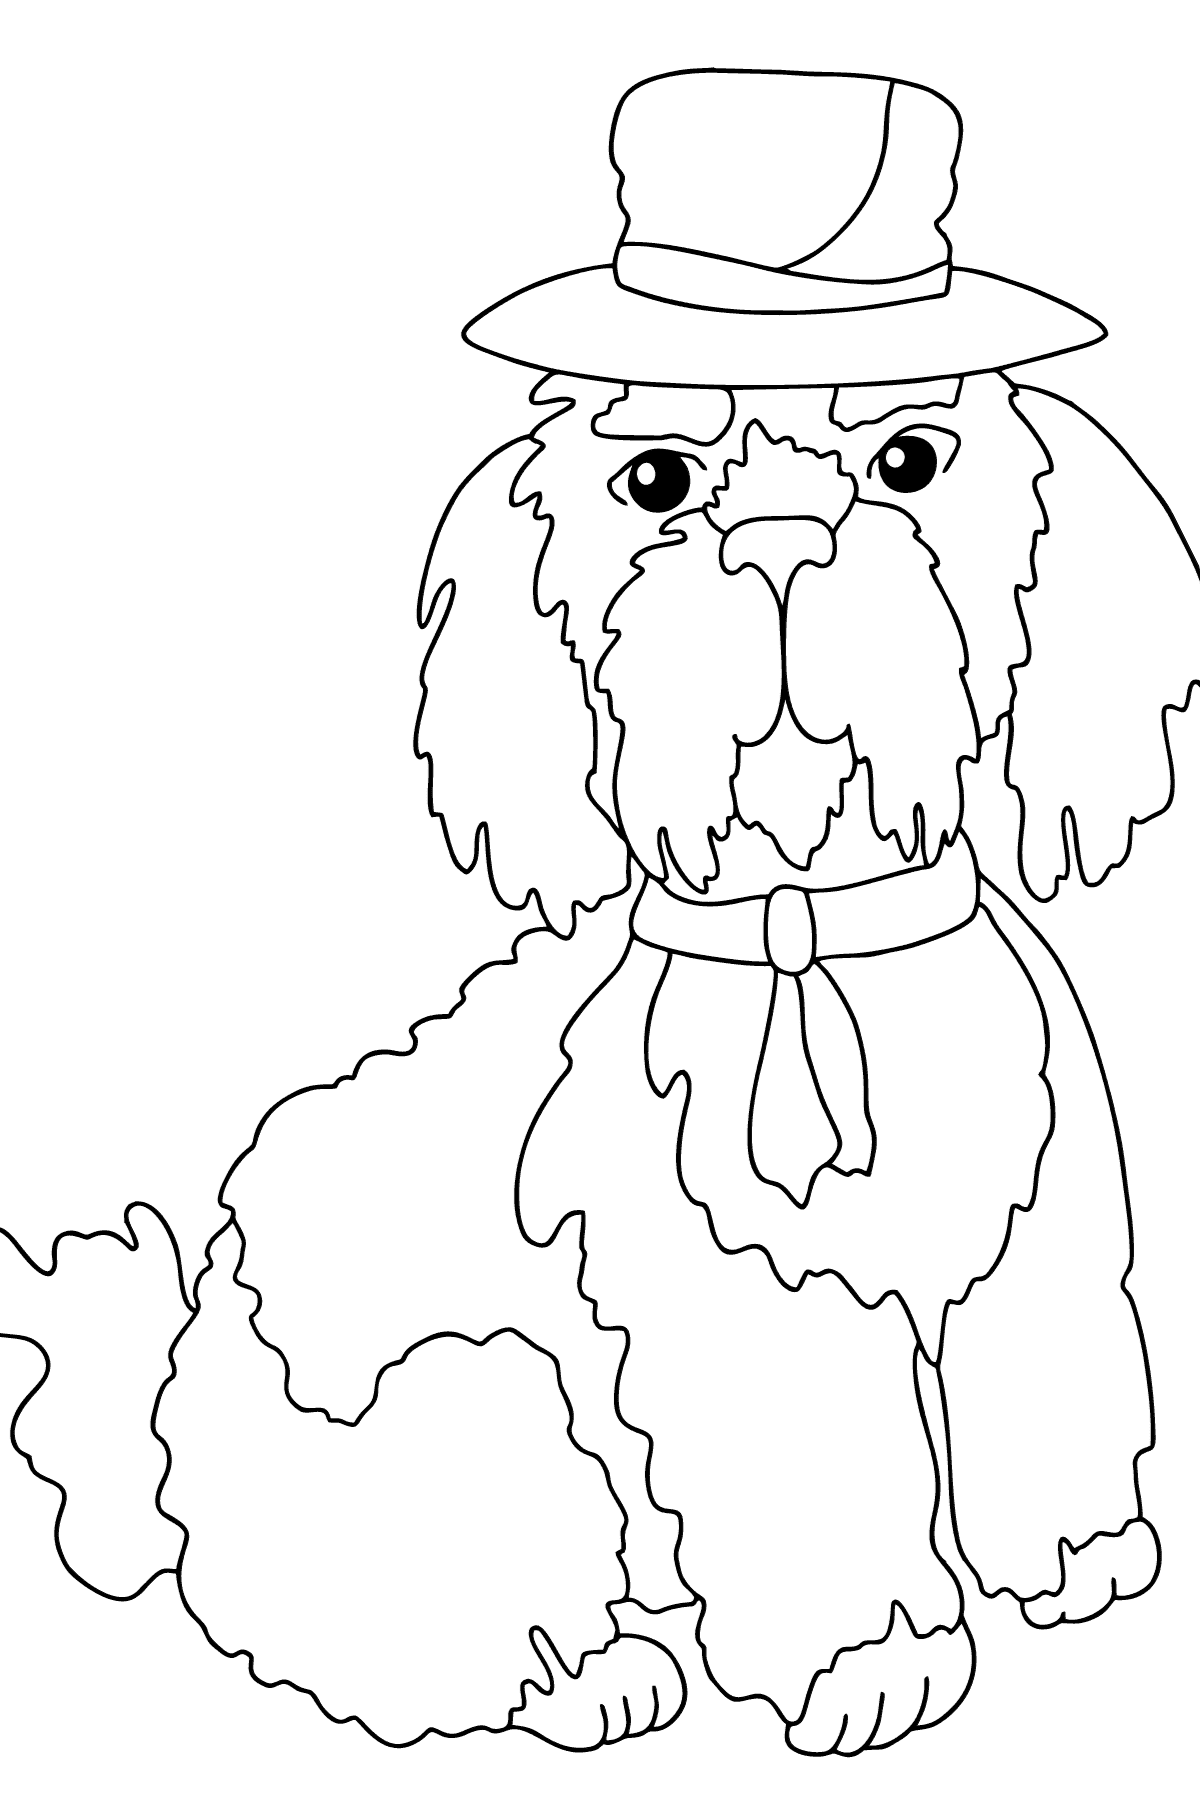 Dibujo para Colorear - Un Perro con un Sombrero Lujoso - Colorear para Niños